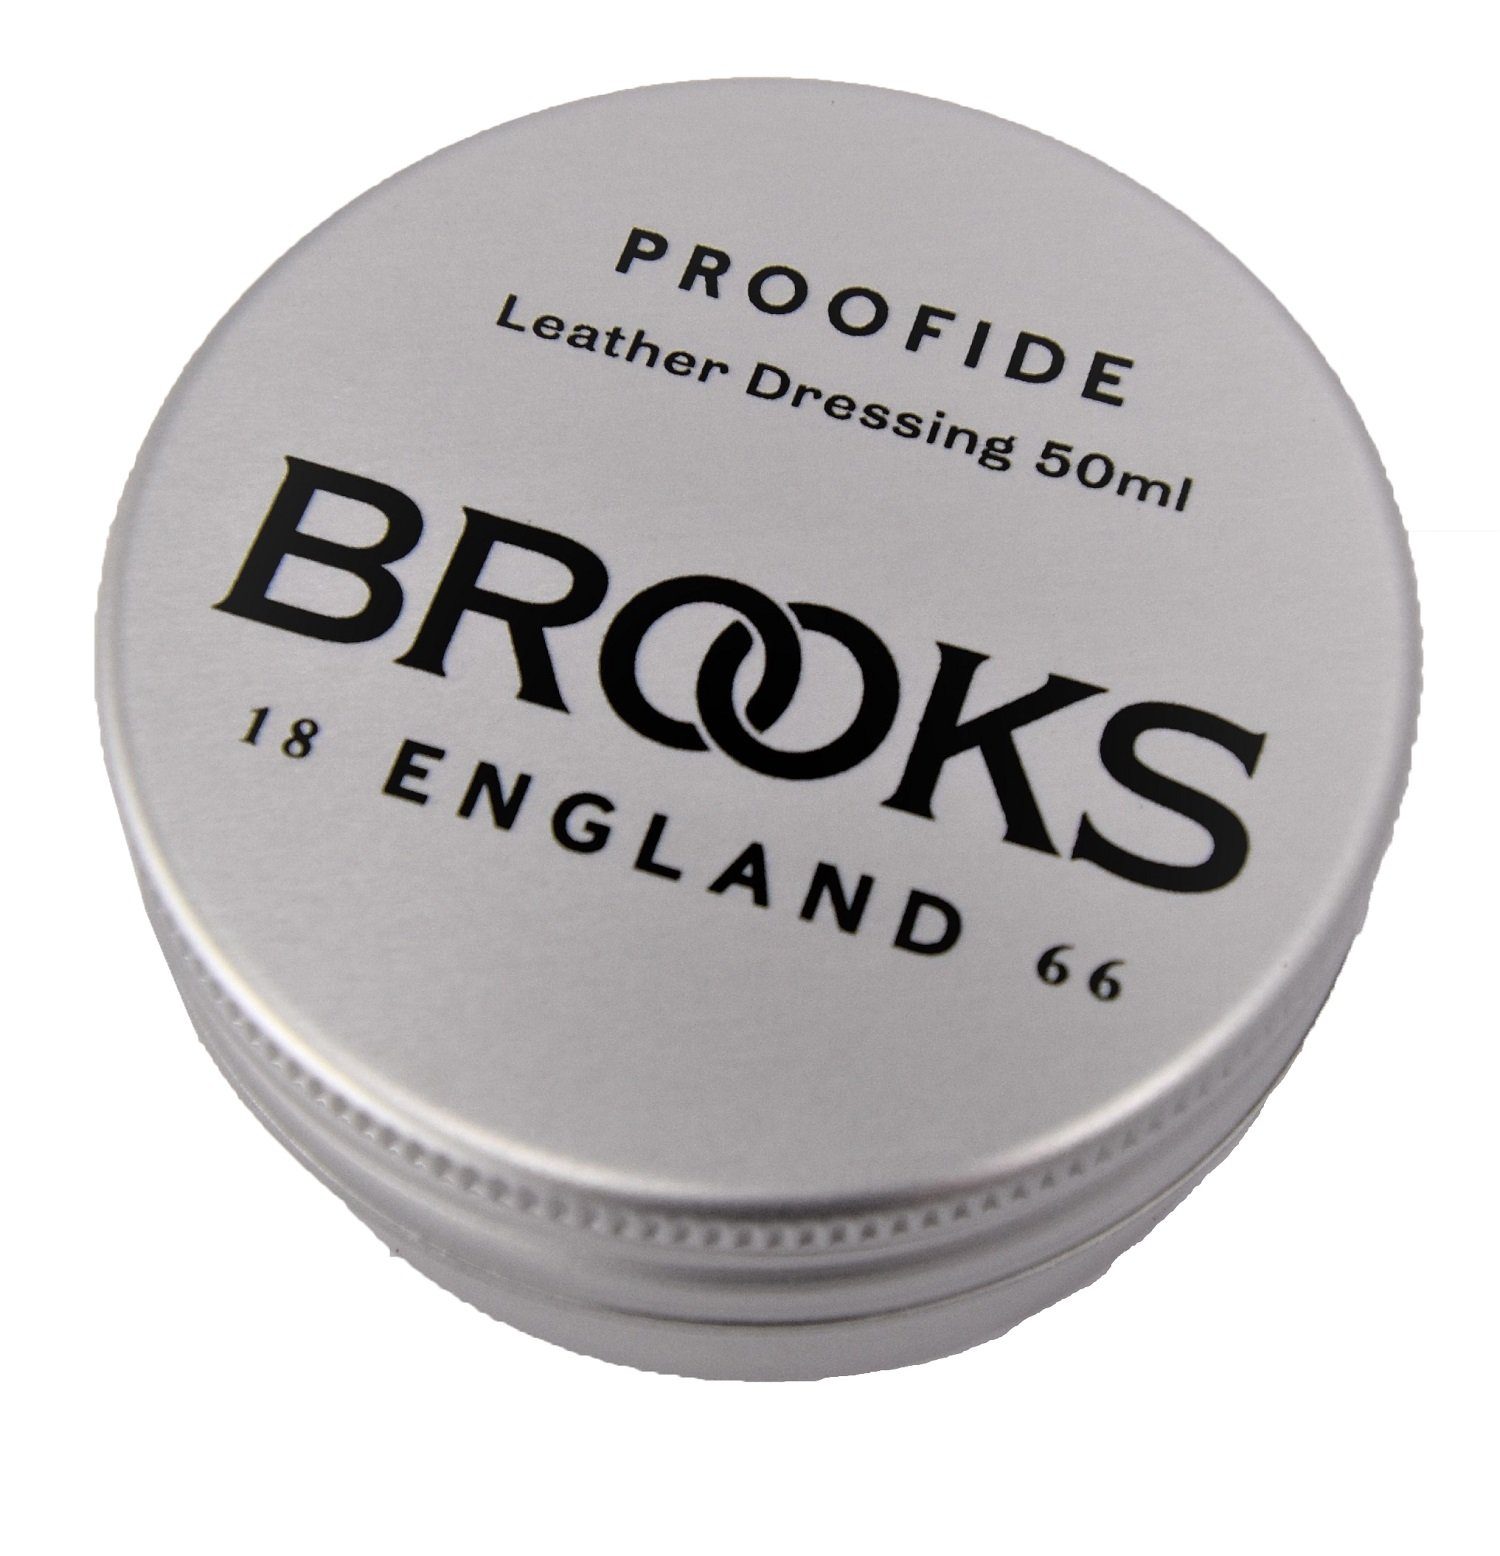 Brooks Fahrrad-Montageständer Brooks Single 50ml Proofide Lederpflege